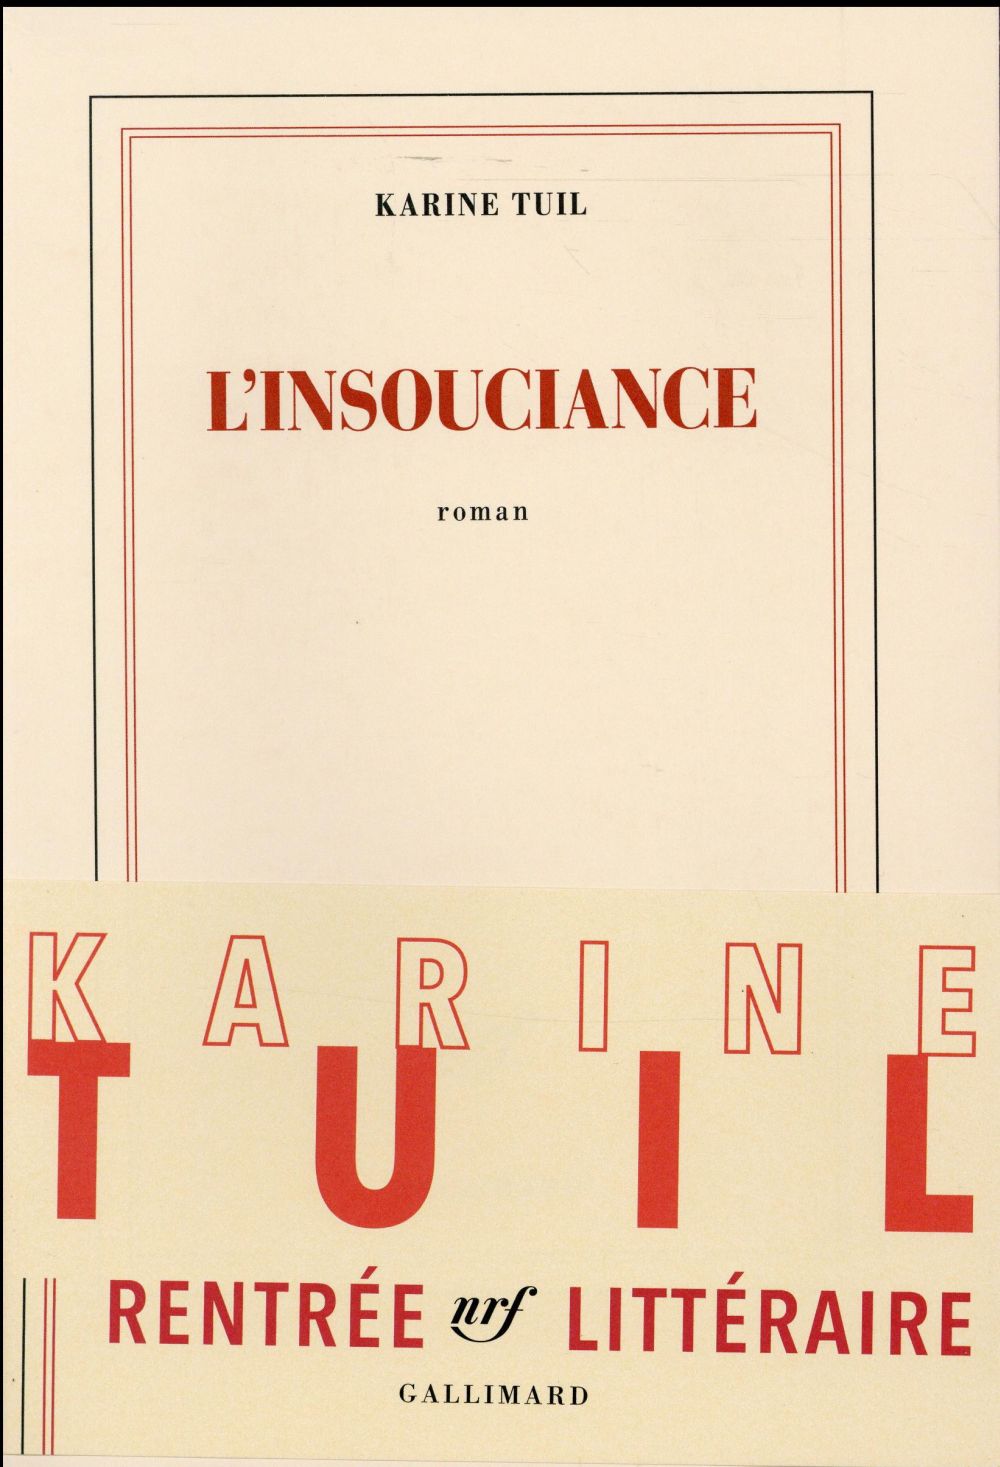 Lectrice du mois d'octobre, Virginie revient sur la rencontre avec Karine Tuil pour son roman "L'insouciance"